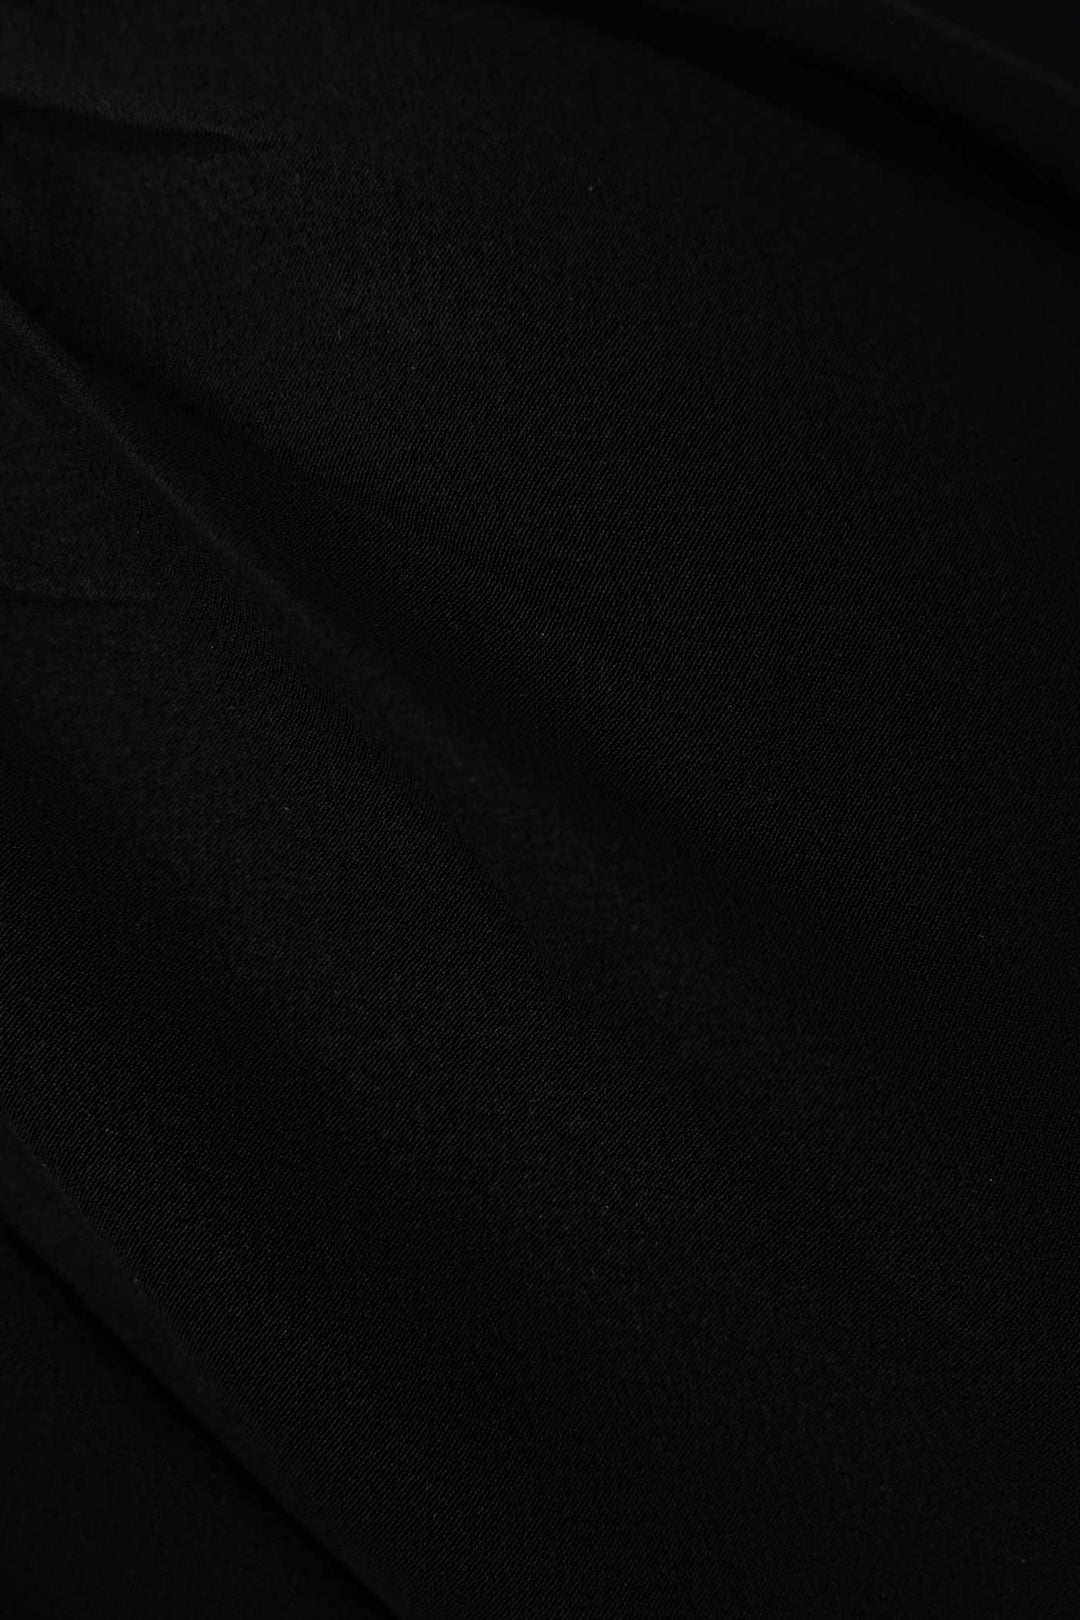 Black Sleeveless V-Neck Silk Dress with White Waistband & Edging | Ombra Eterna